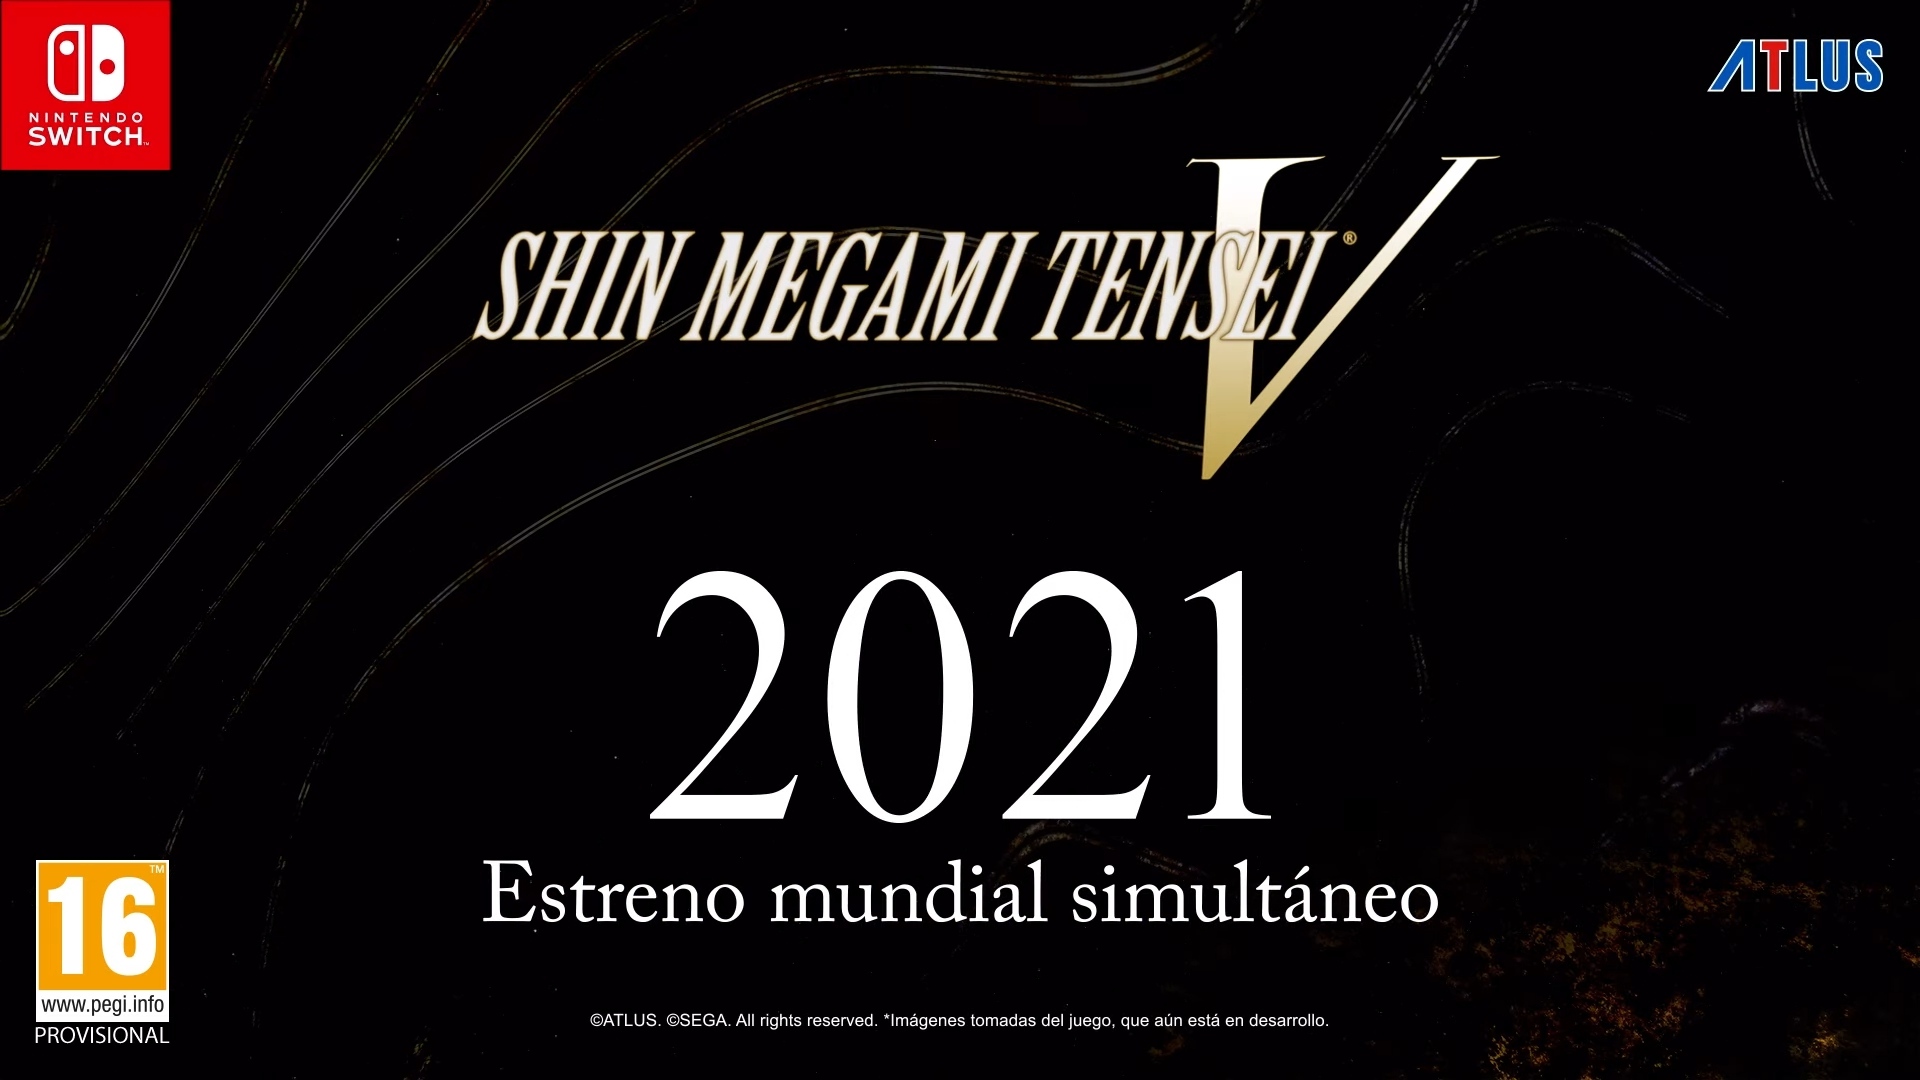 Shin Megami Tensei V se lanzará simultáneamente en todo el mundo en 2021